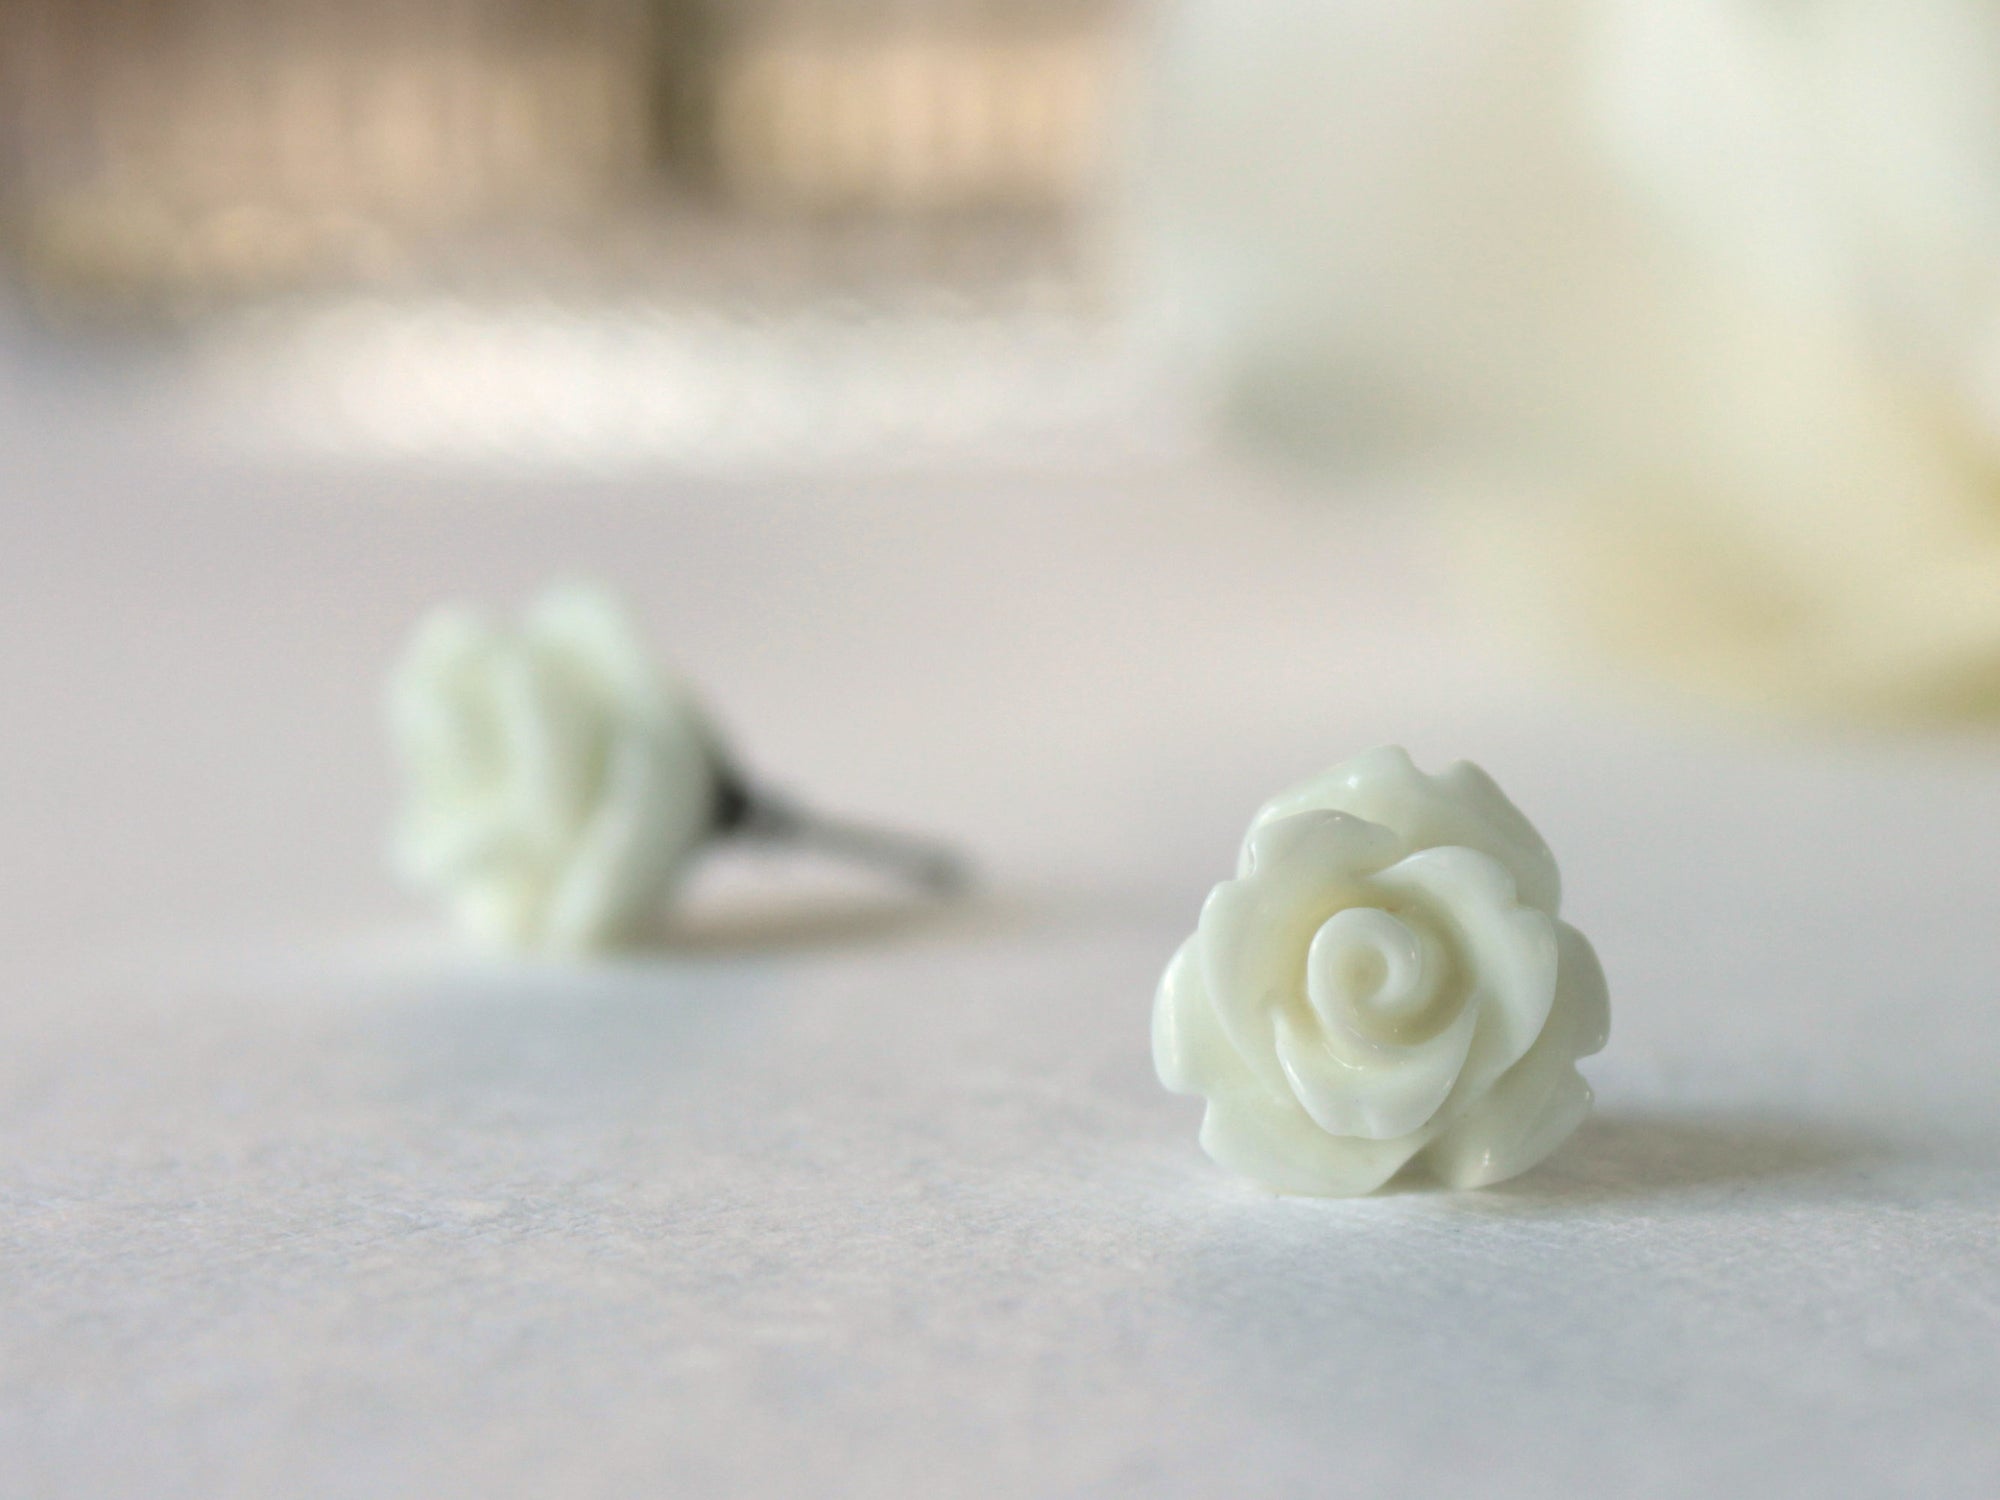 Single Bloom Rose Stud Earrings in White